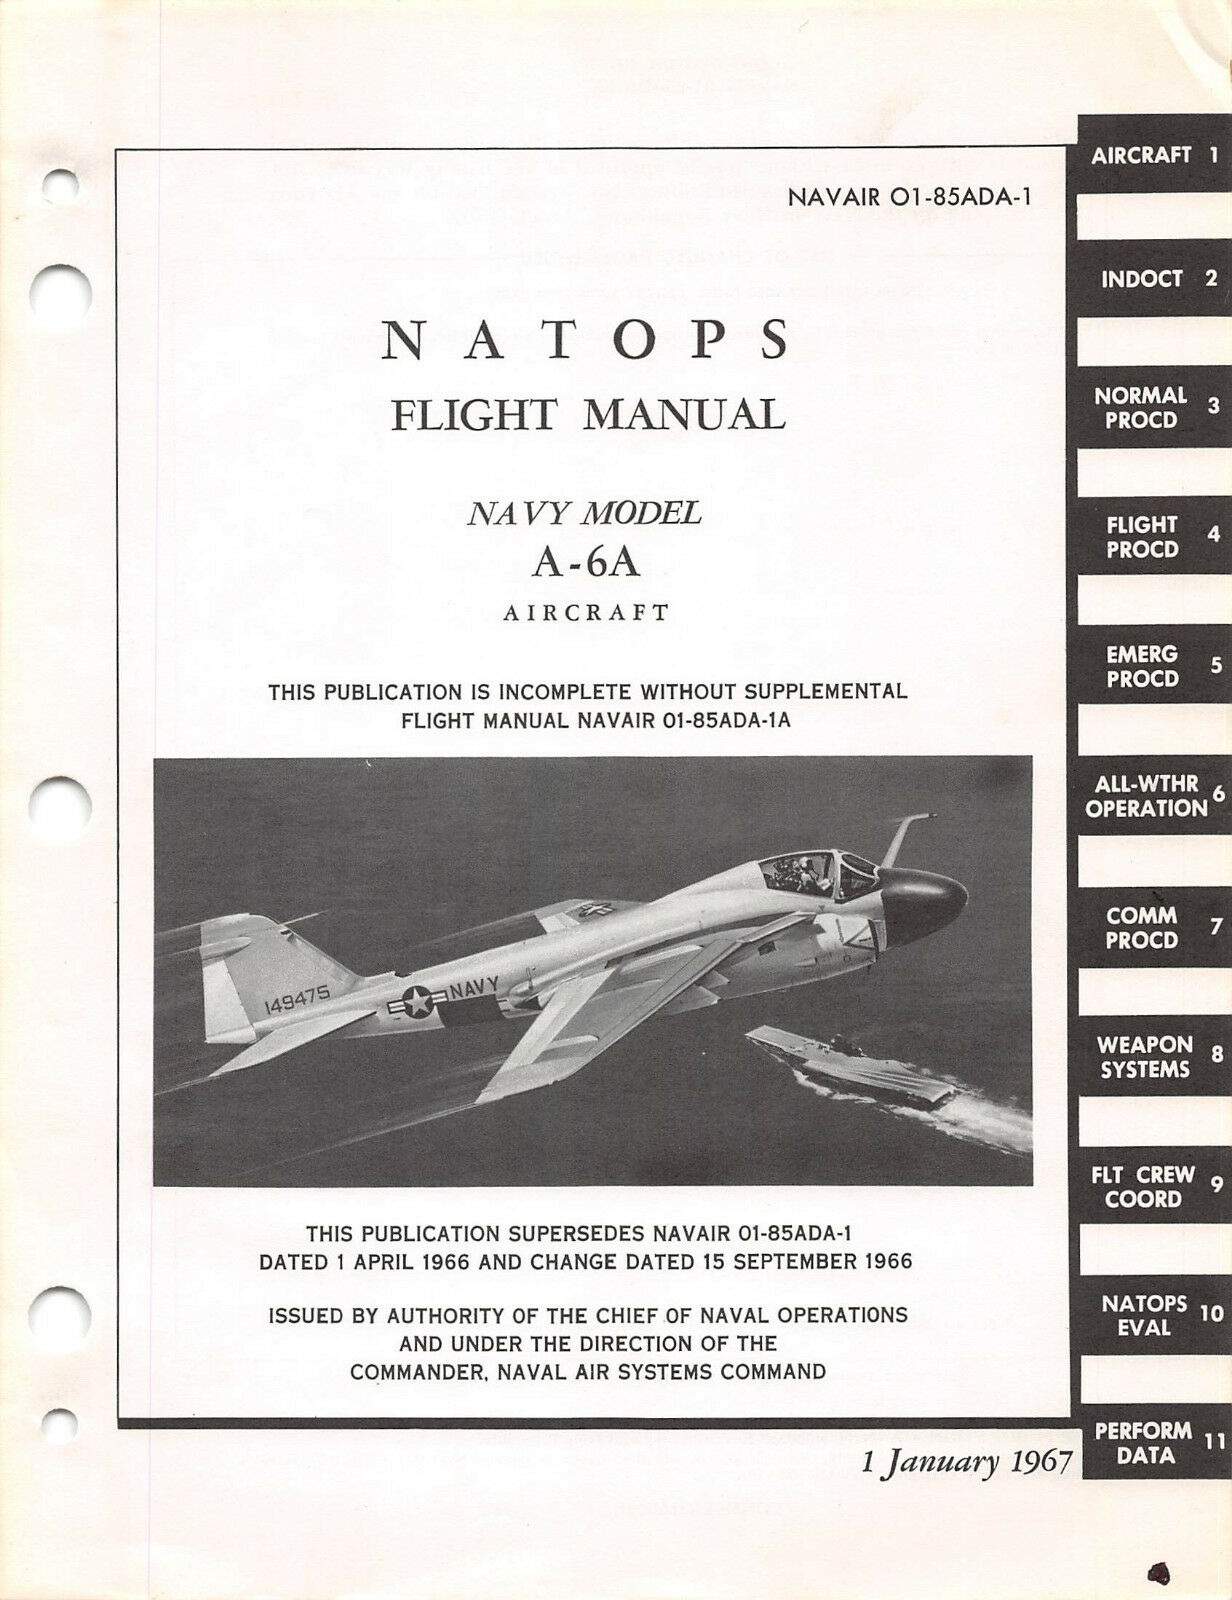 A-6a Natops Flight Manual Aircraft Manual 1967 Flight Handbook - Cd Version